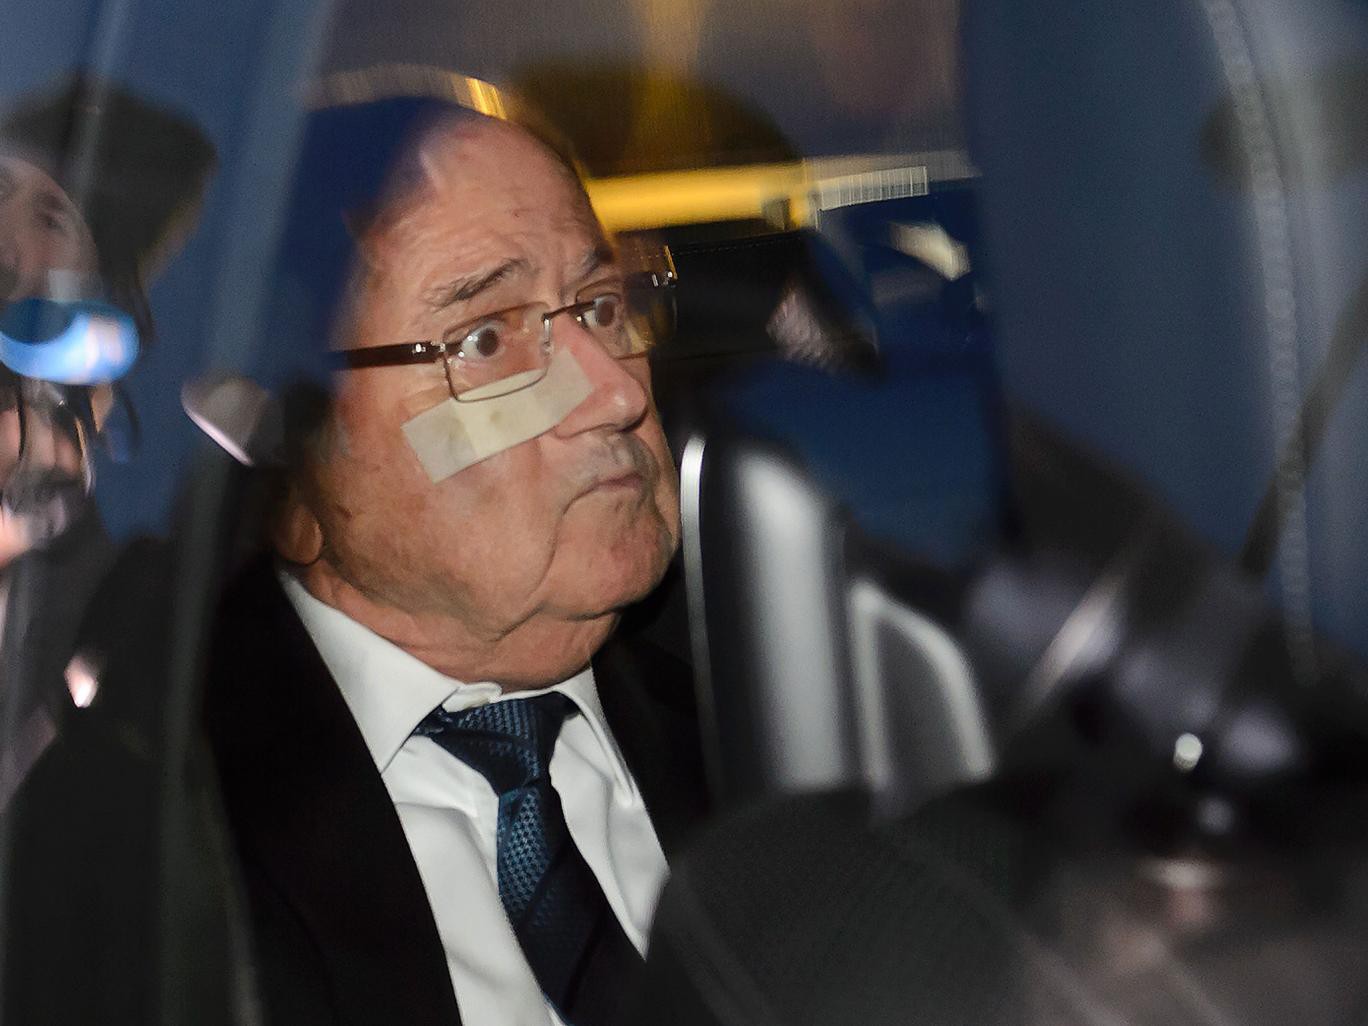 Bị tố cáo, Blatter chuẩn bị ngồi tù?